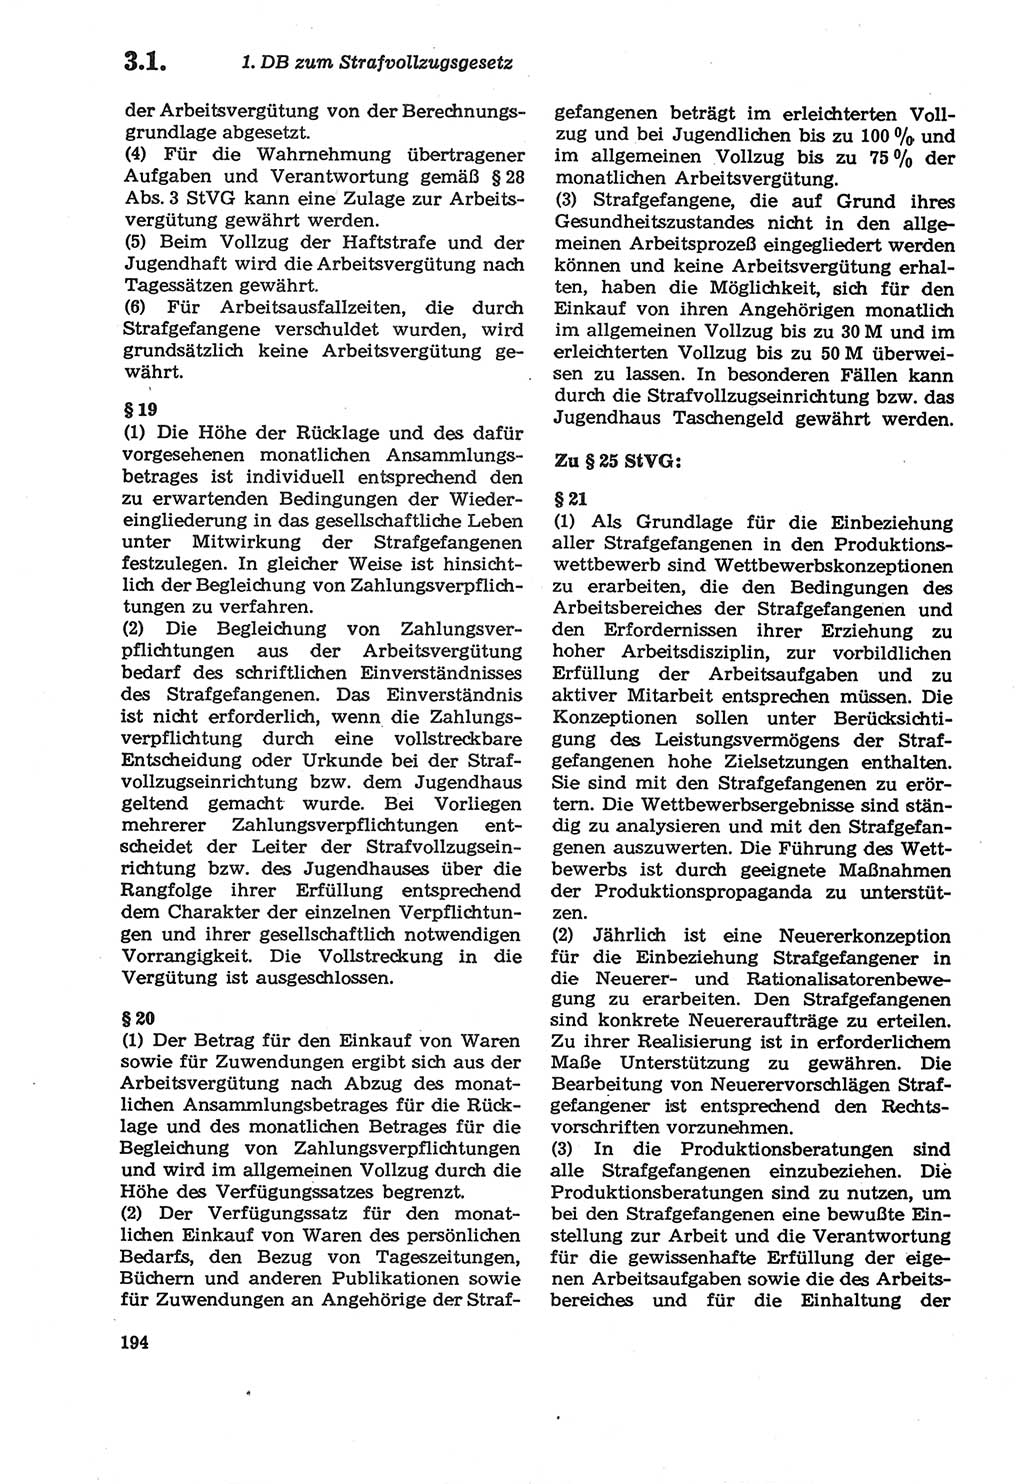 Strafprozeßordnung (StPO) der Deutschen Demokratischen Republik (DDR) sowie angrenzende Gesetze und Bestimmungen 1979, Seite 194 (StPO DDR Ges. Best. 1979, S. 194)